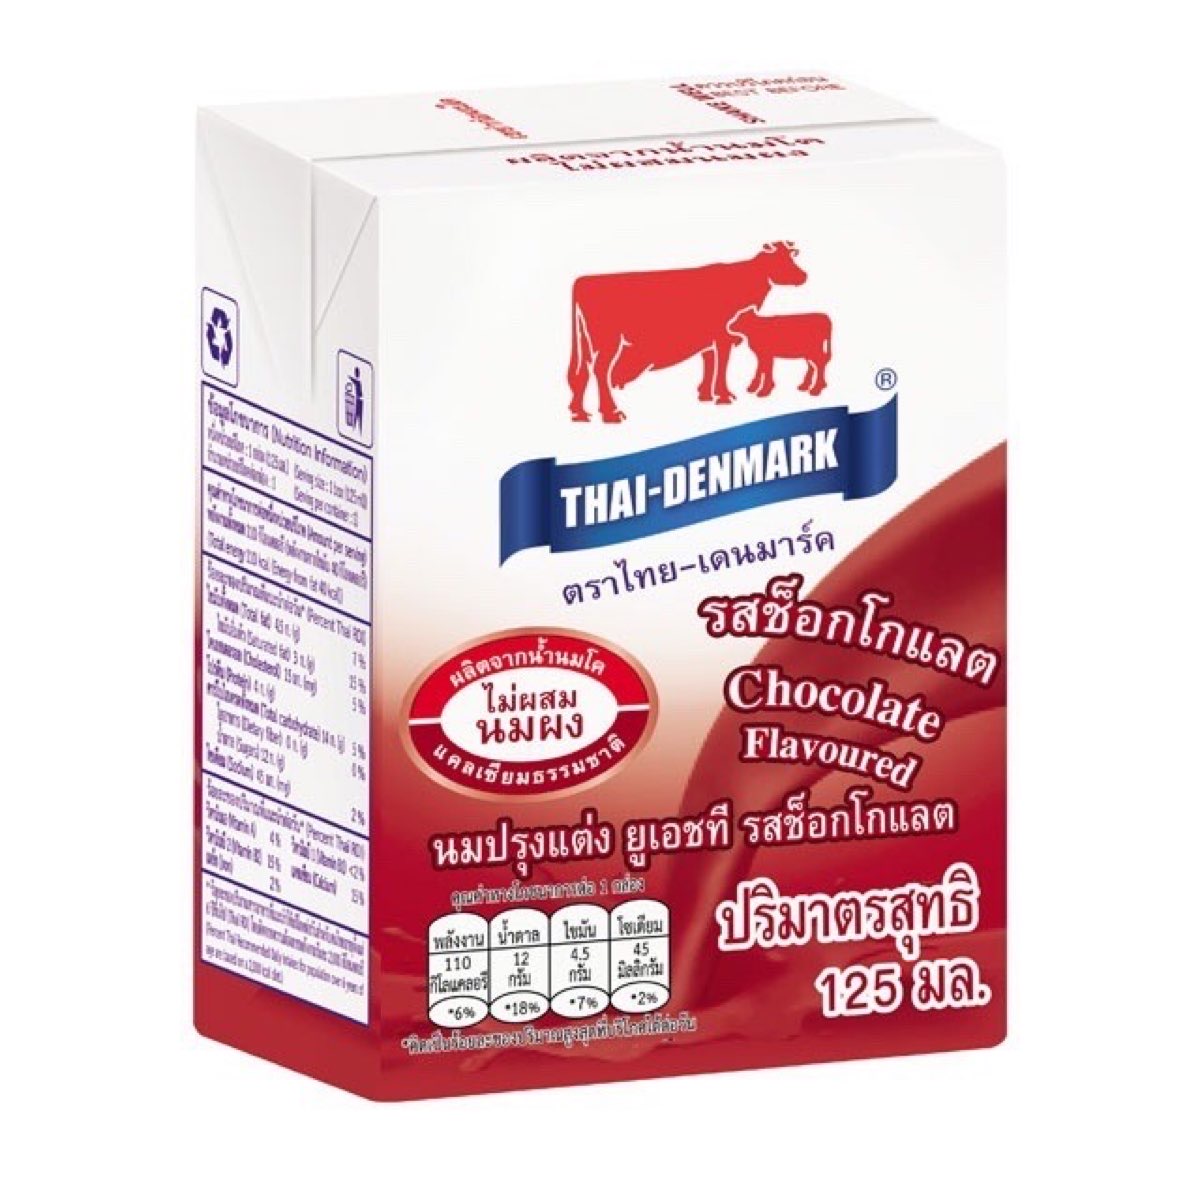 นมไทย-เดนมาร์ค รสช็อกโกแลต ขนาด 125 ml. บรรจุ 48 กล่อง